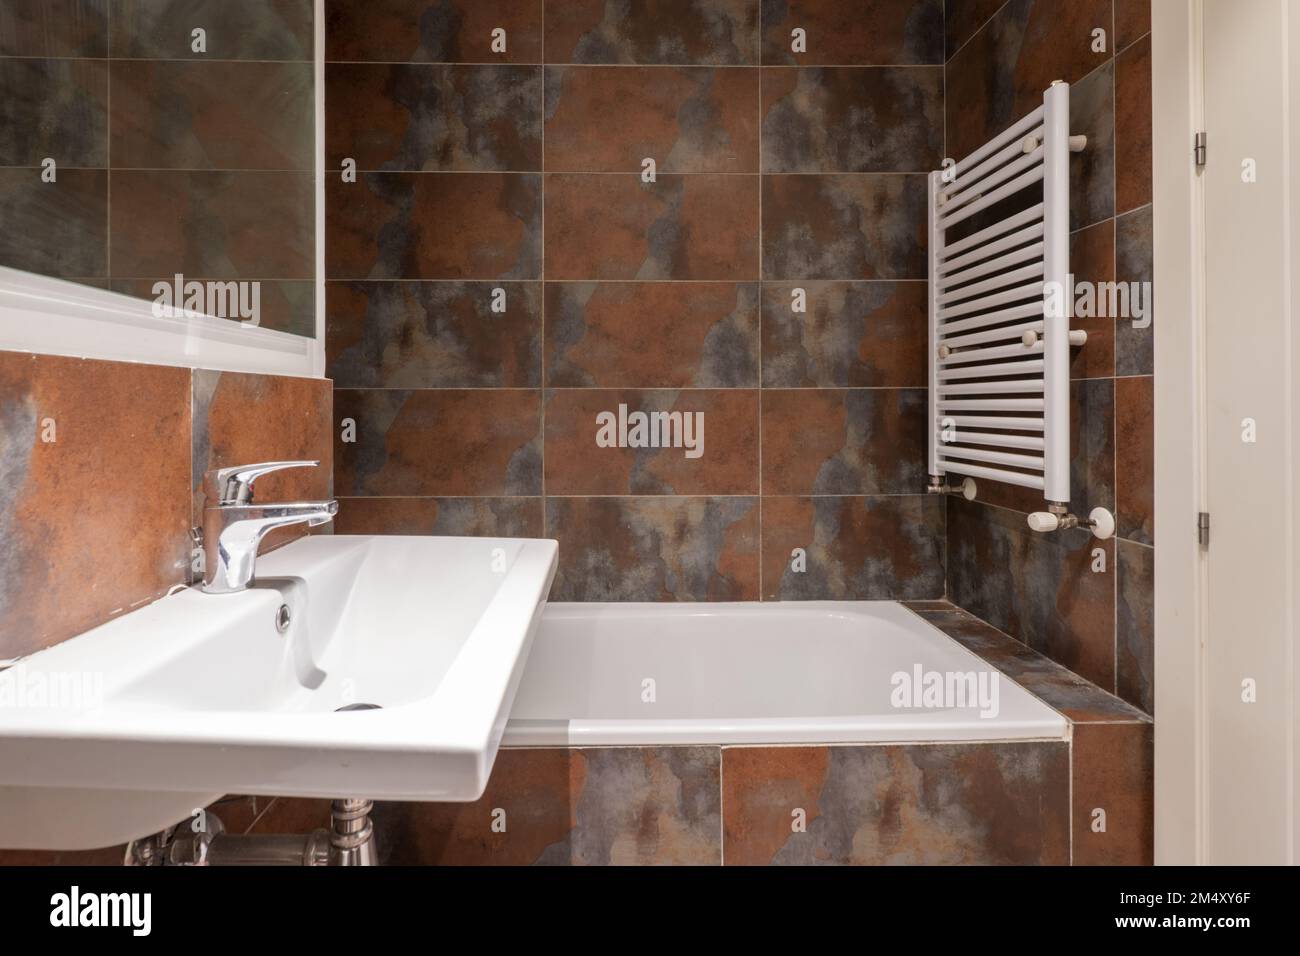 Salle de bains avec lavabo mural en porcelaine blanche sans armoire, miroir encadré de bois blanc, carreaux mouillés et porte-serviette blanc Banque D'Images